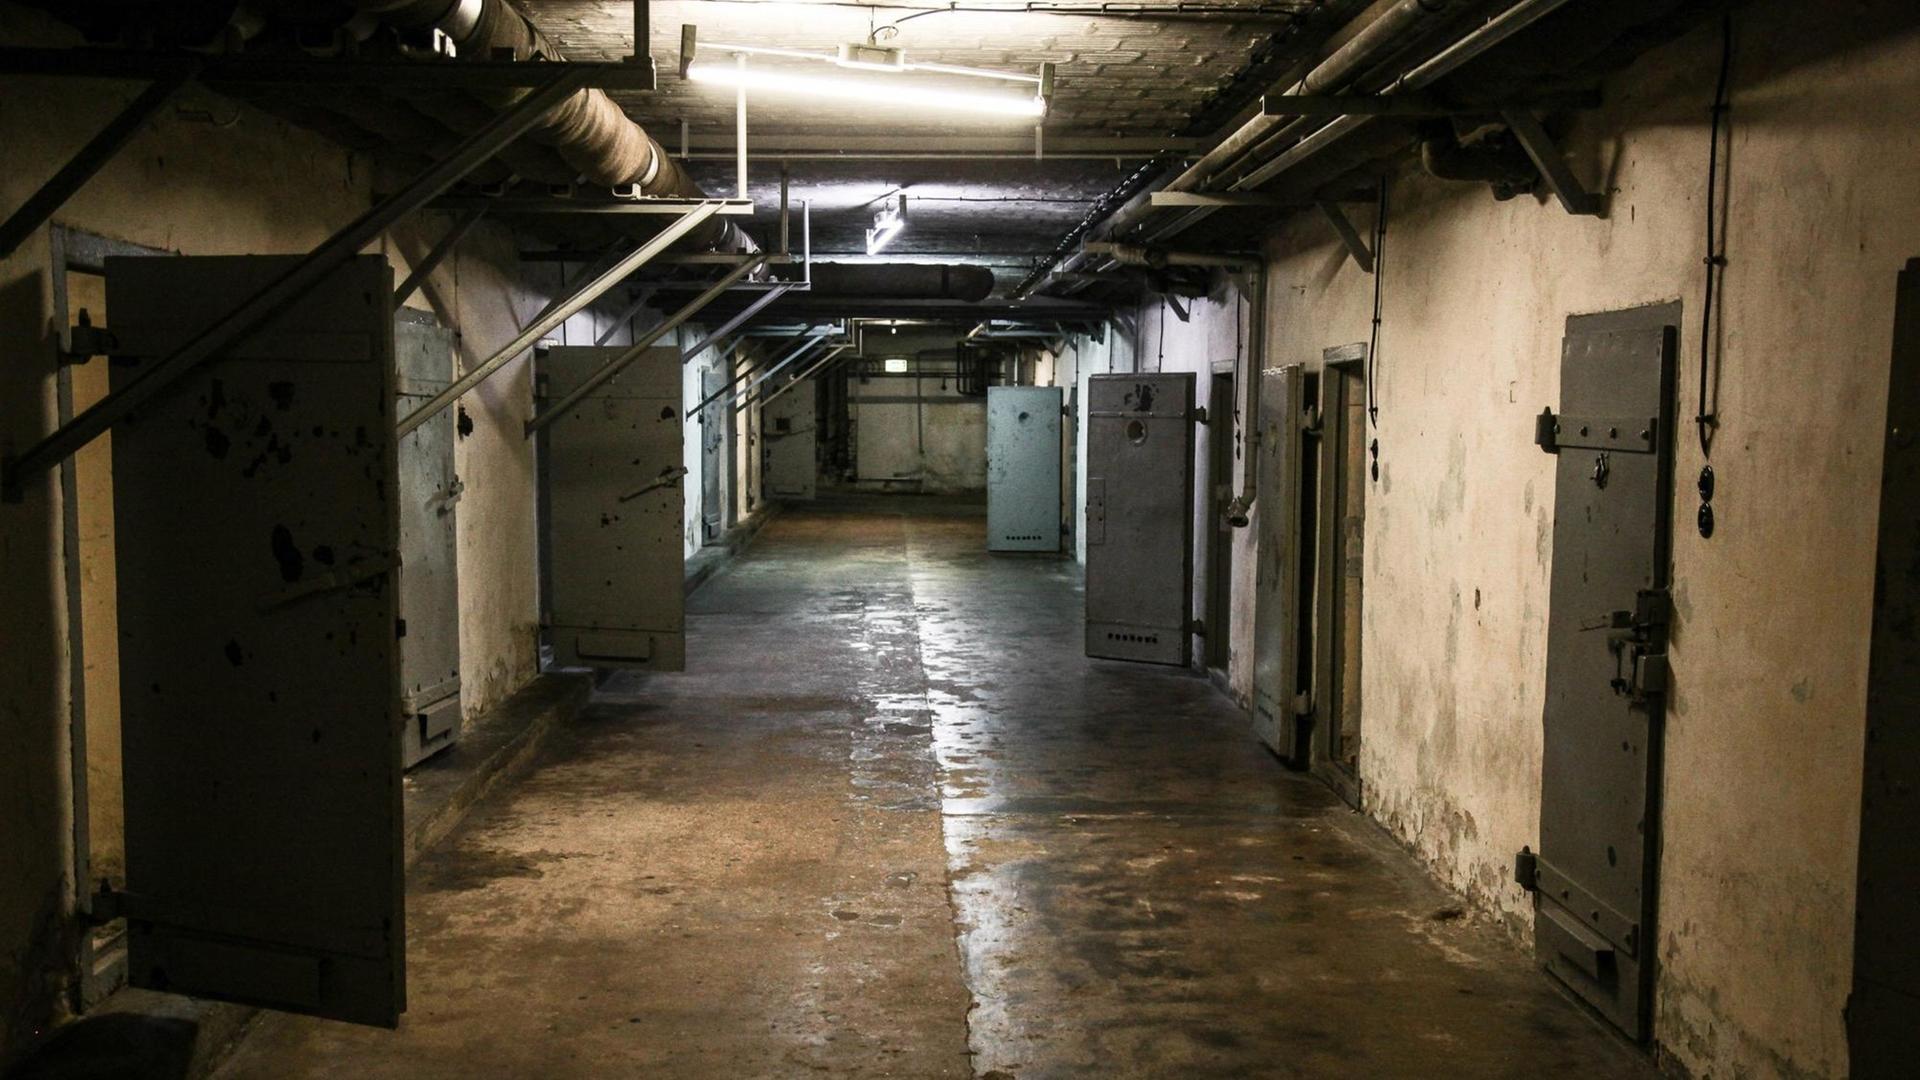 Ein Farbfoto zeigt einen langen, dunklen Gang mit eucht schimmerndem Boden und Metall-Türen